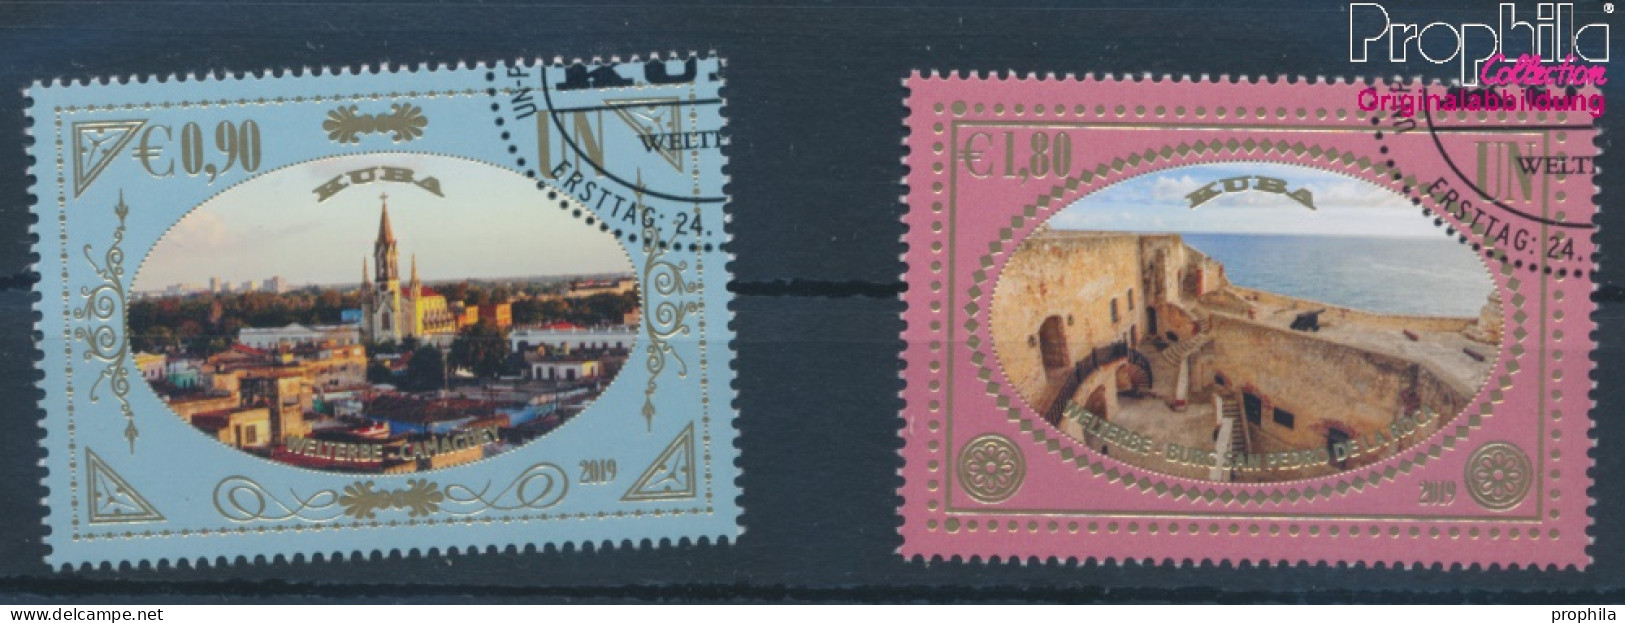 UNO - Wien 1070-1071 (kompl.Ausg.) Gestempelt 2019 UNESCO Welterbe Kuba (10357215 - Used Stamps